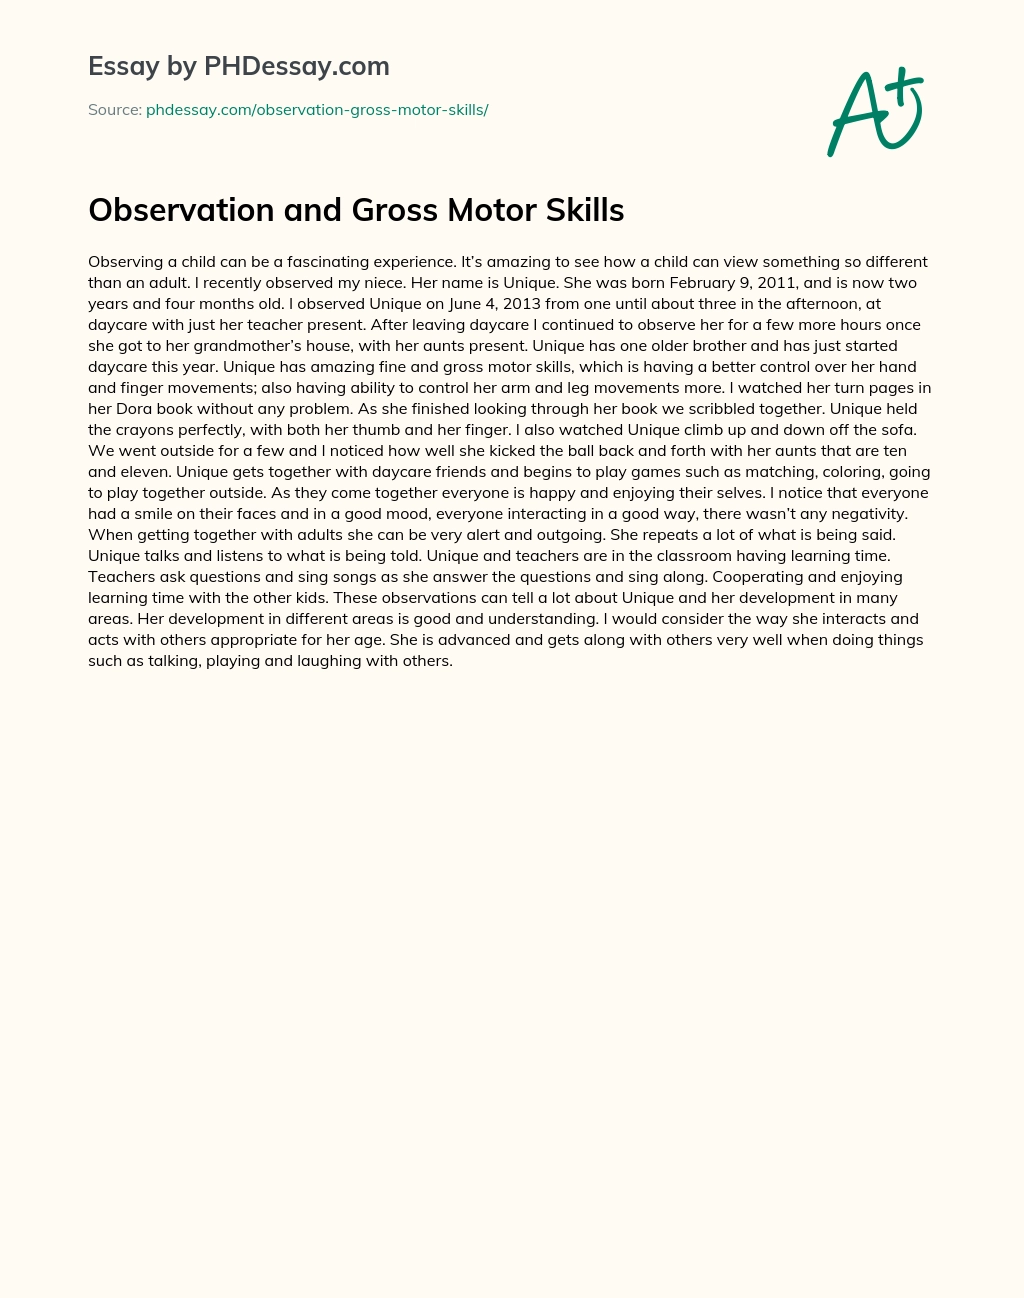 Observation and Gross Motor Skills essay